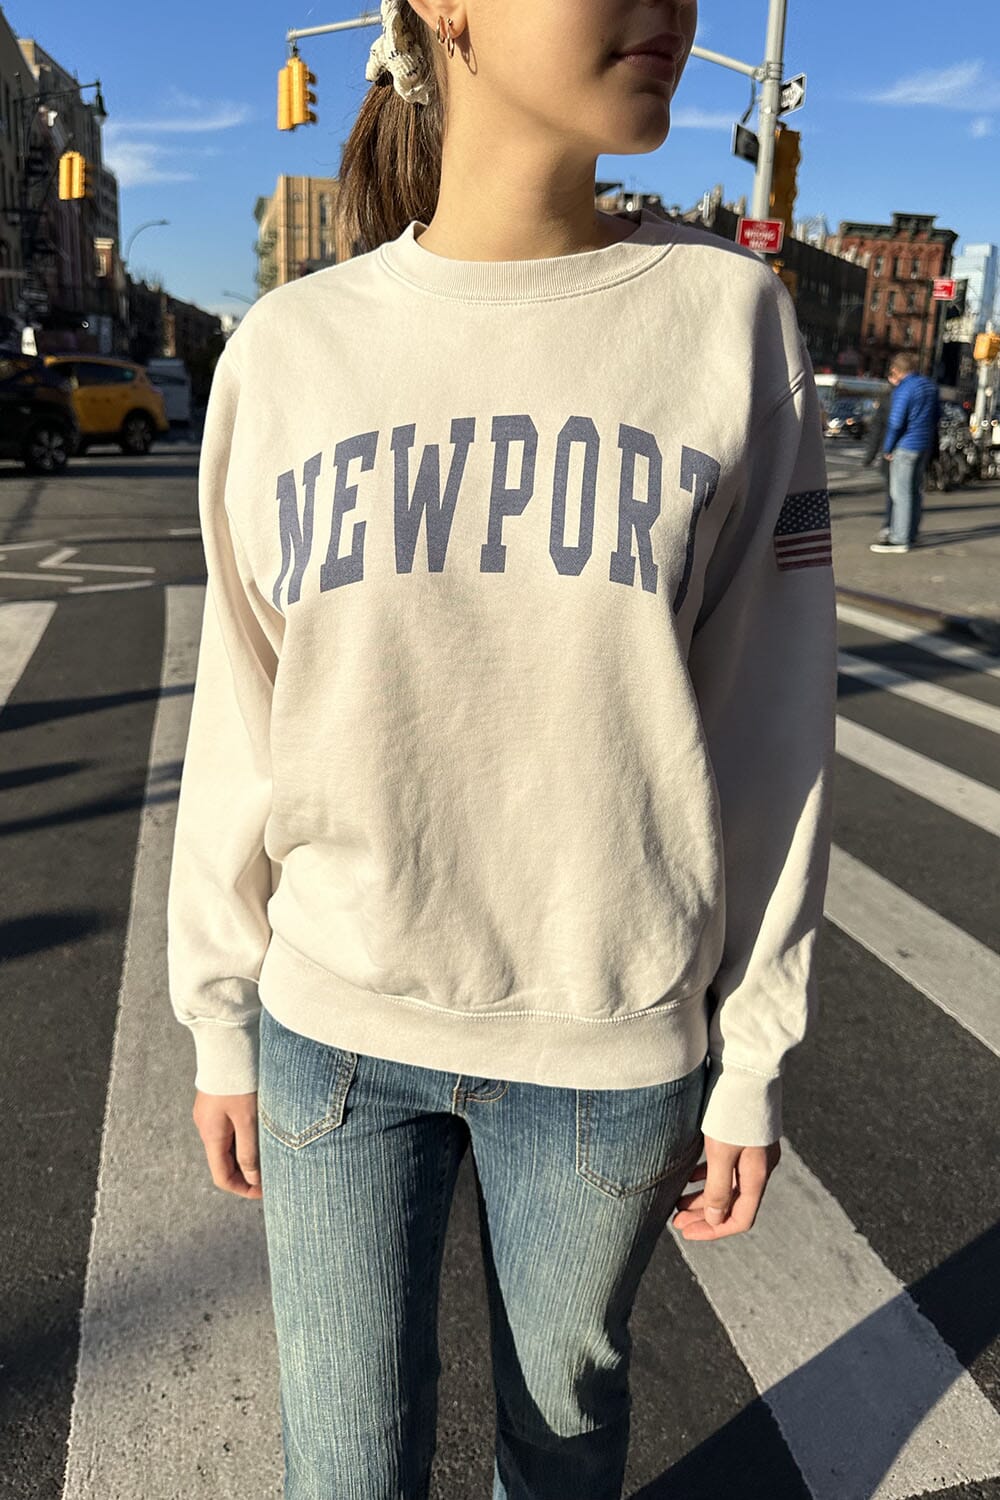 Newport Brandy Erica Melville – Sweatshirt